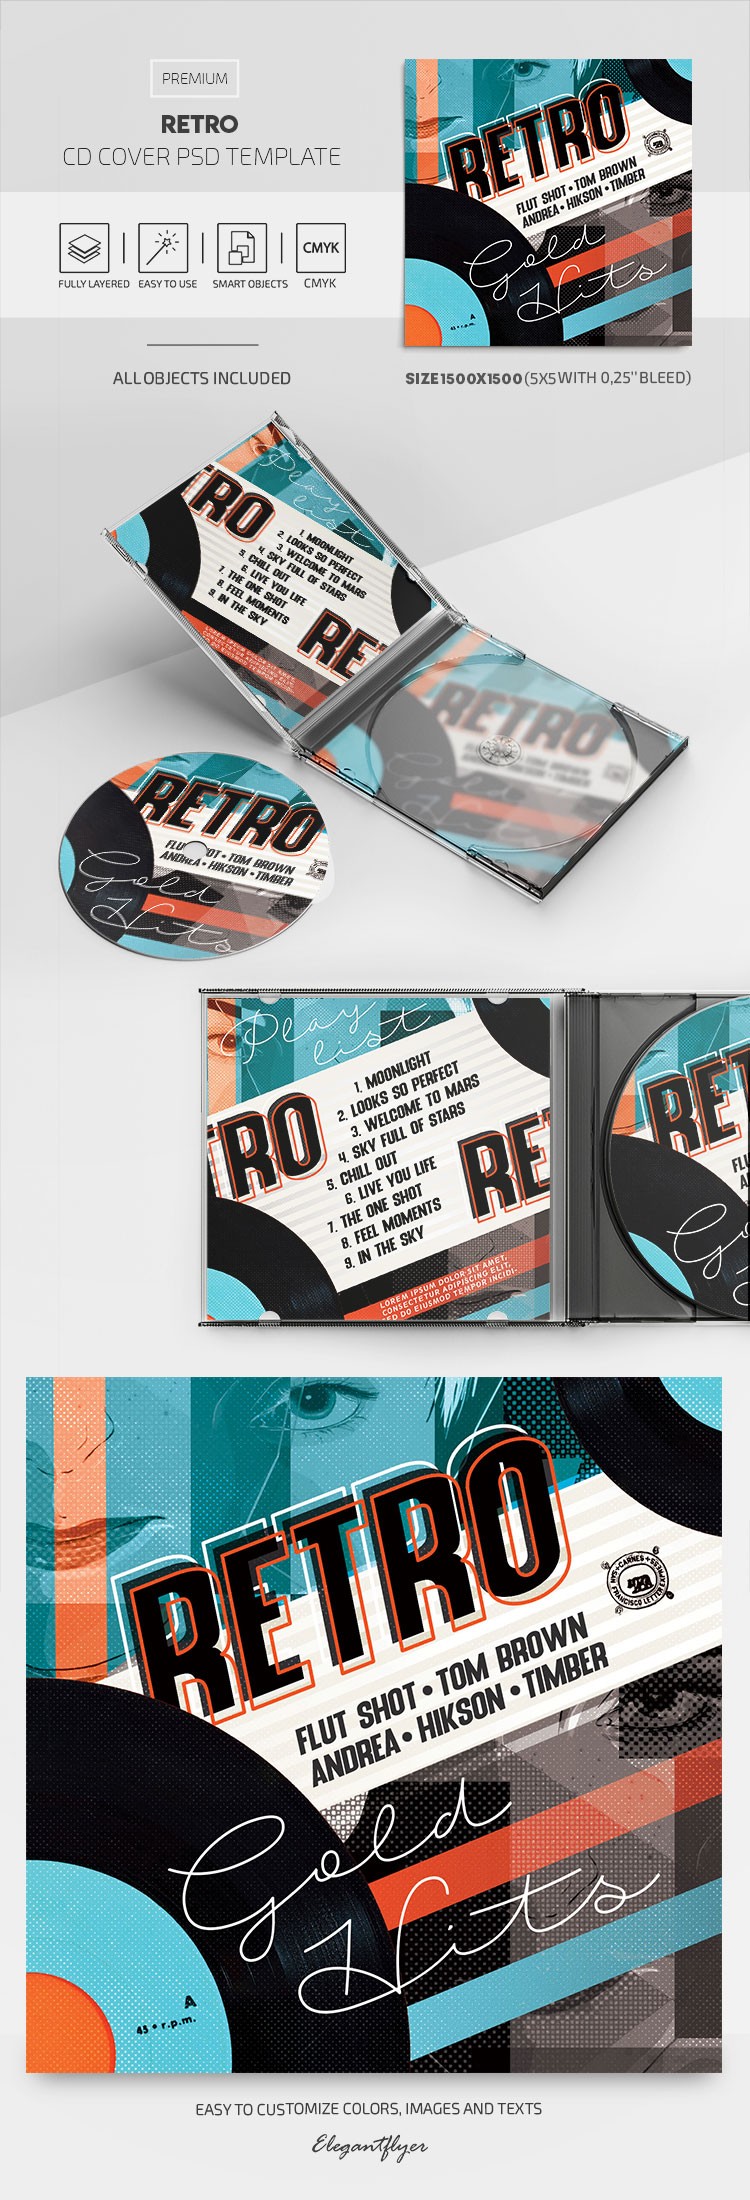 Retro CD Cover --> Retro-CD-Cover by ElegantFlyer